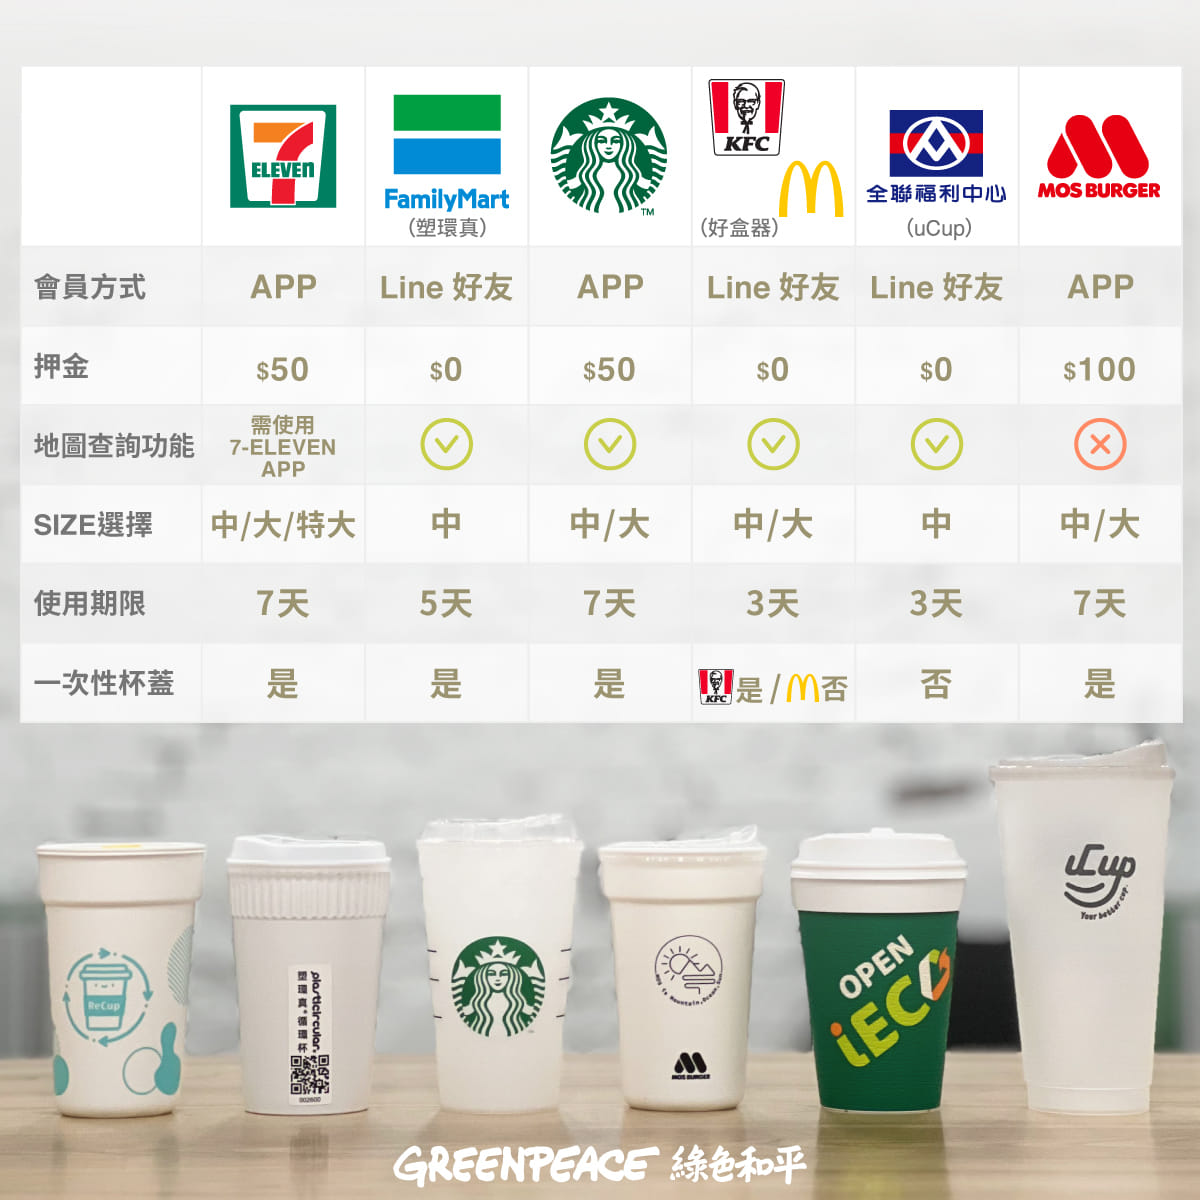 台灣多間連鎖便利店、快餐店、超級市場與咖啡店，各自引入不同模式的環保餐具借還系統取代即棄餐具，帶頭掀起減塑風氣。 © Greenpeace